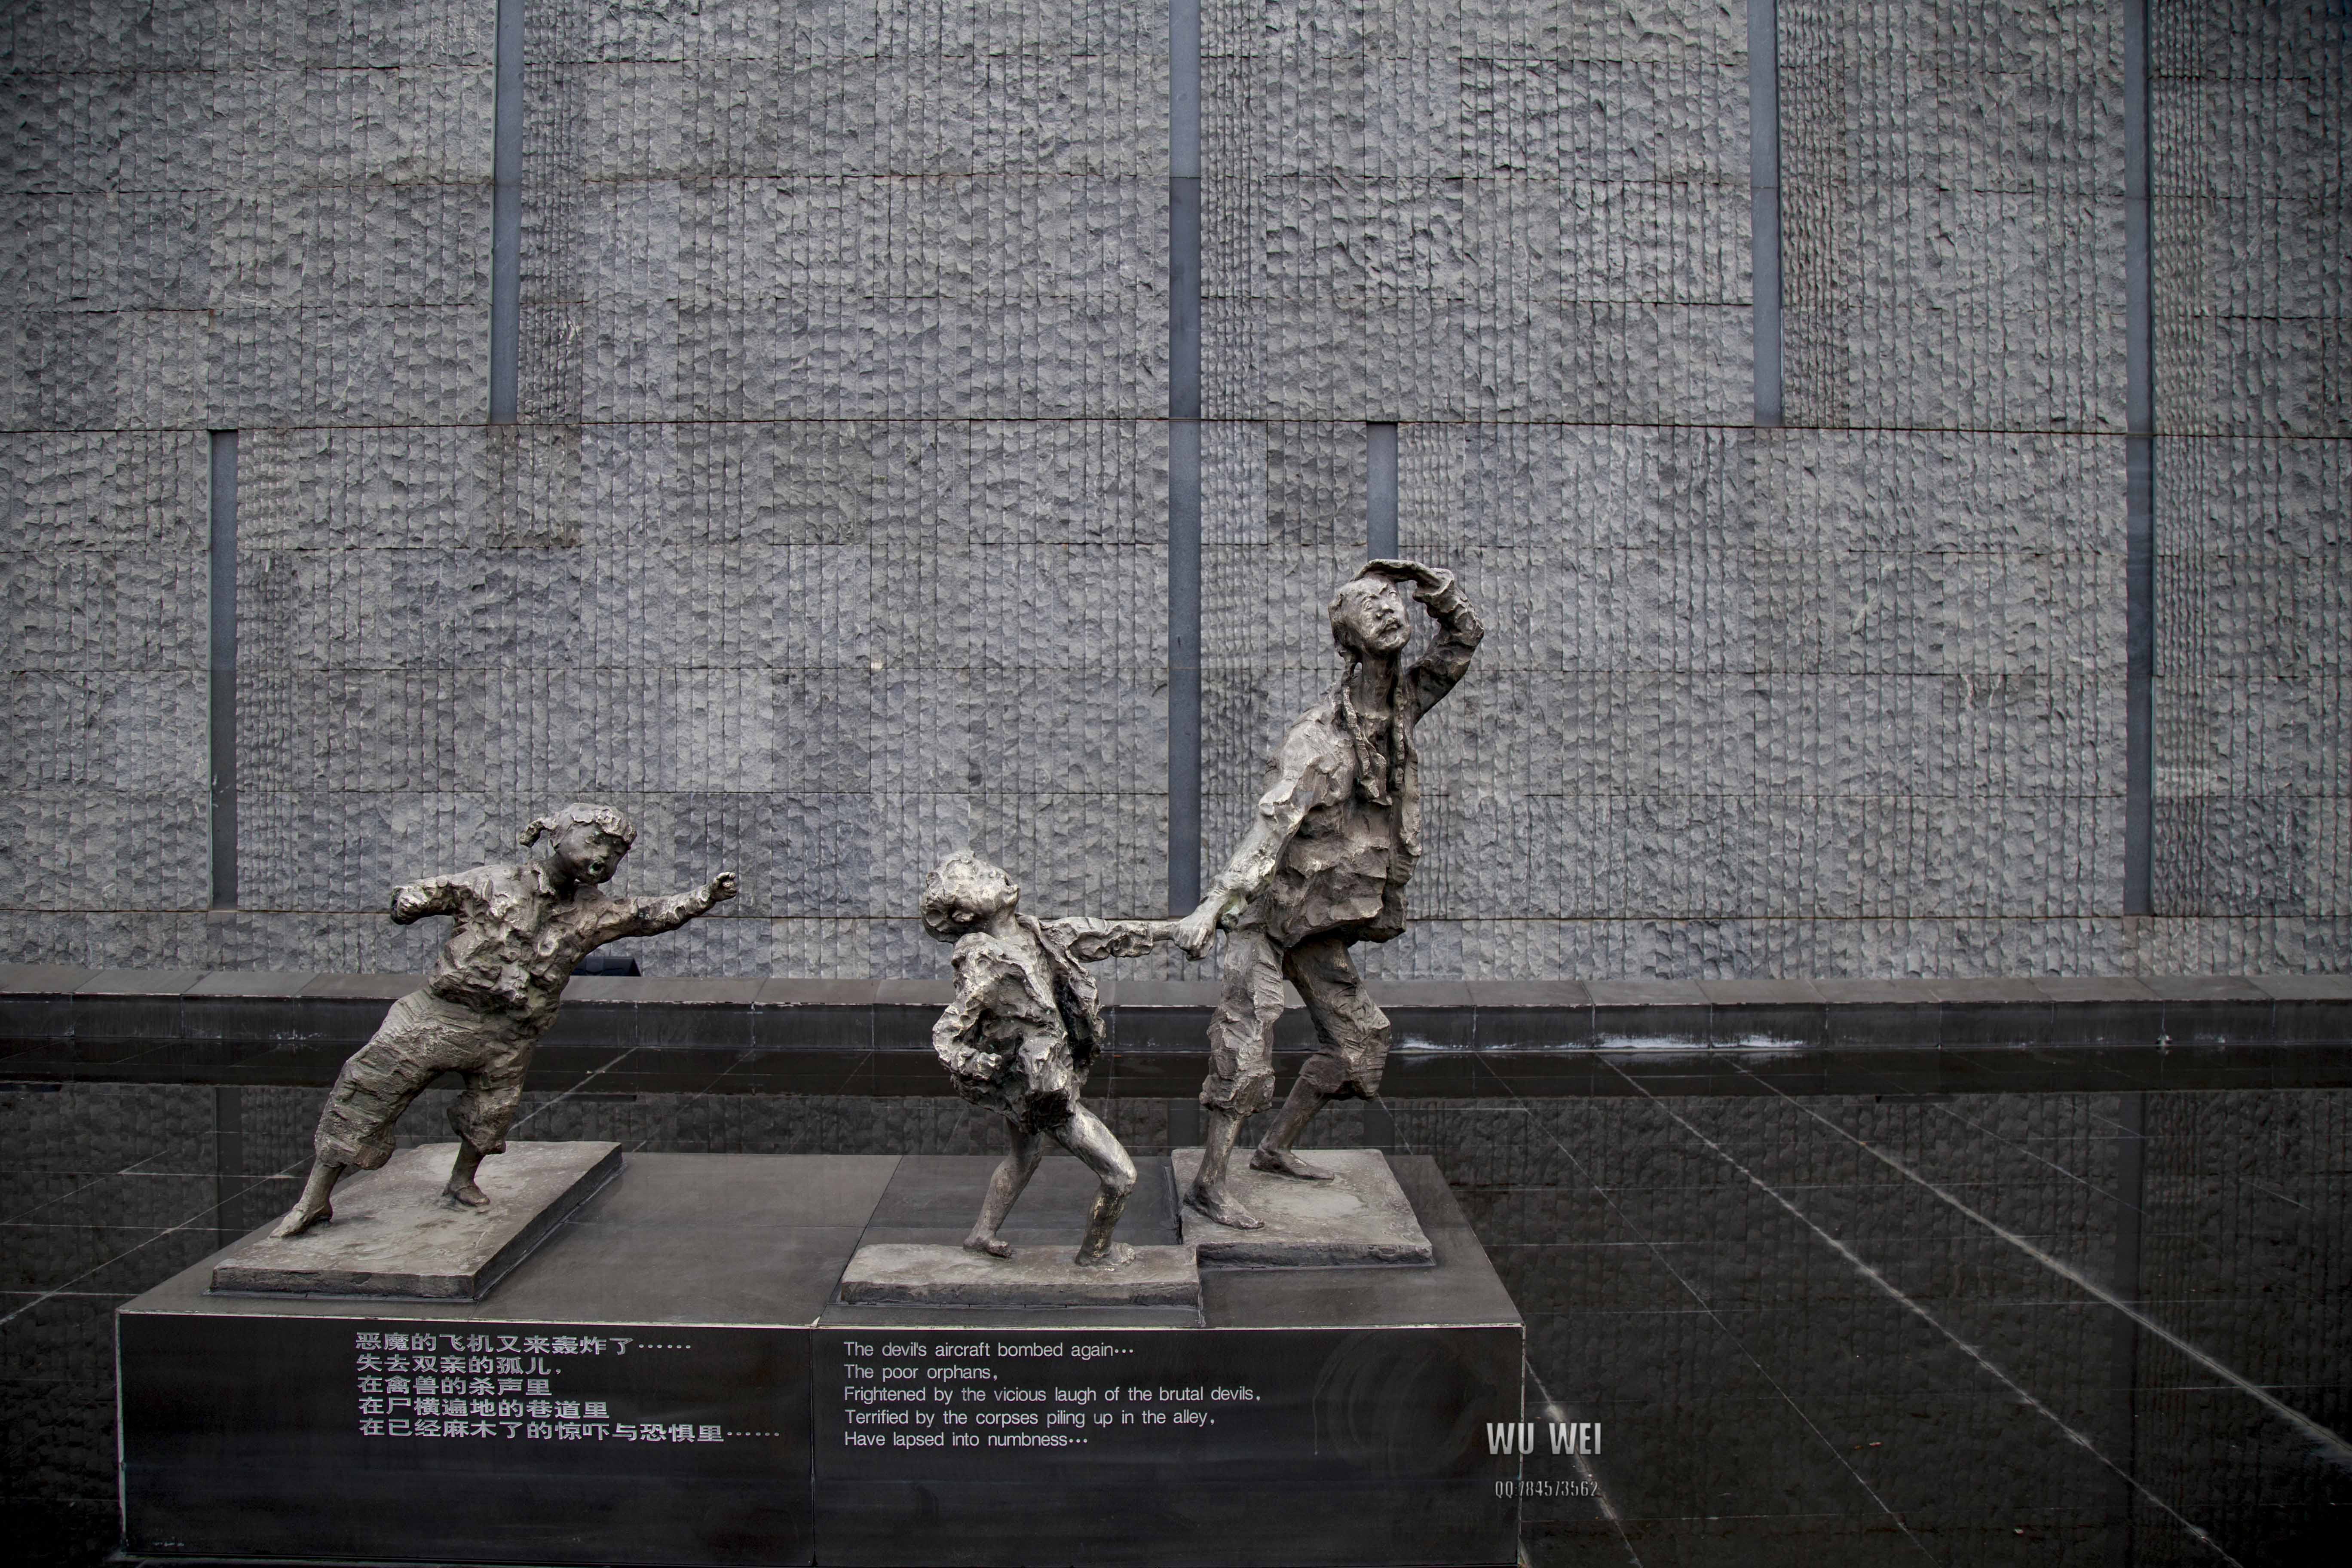 祈福和平南京大屠杀博物馆